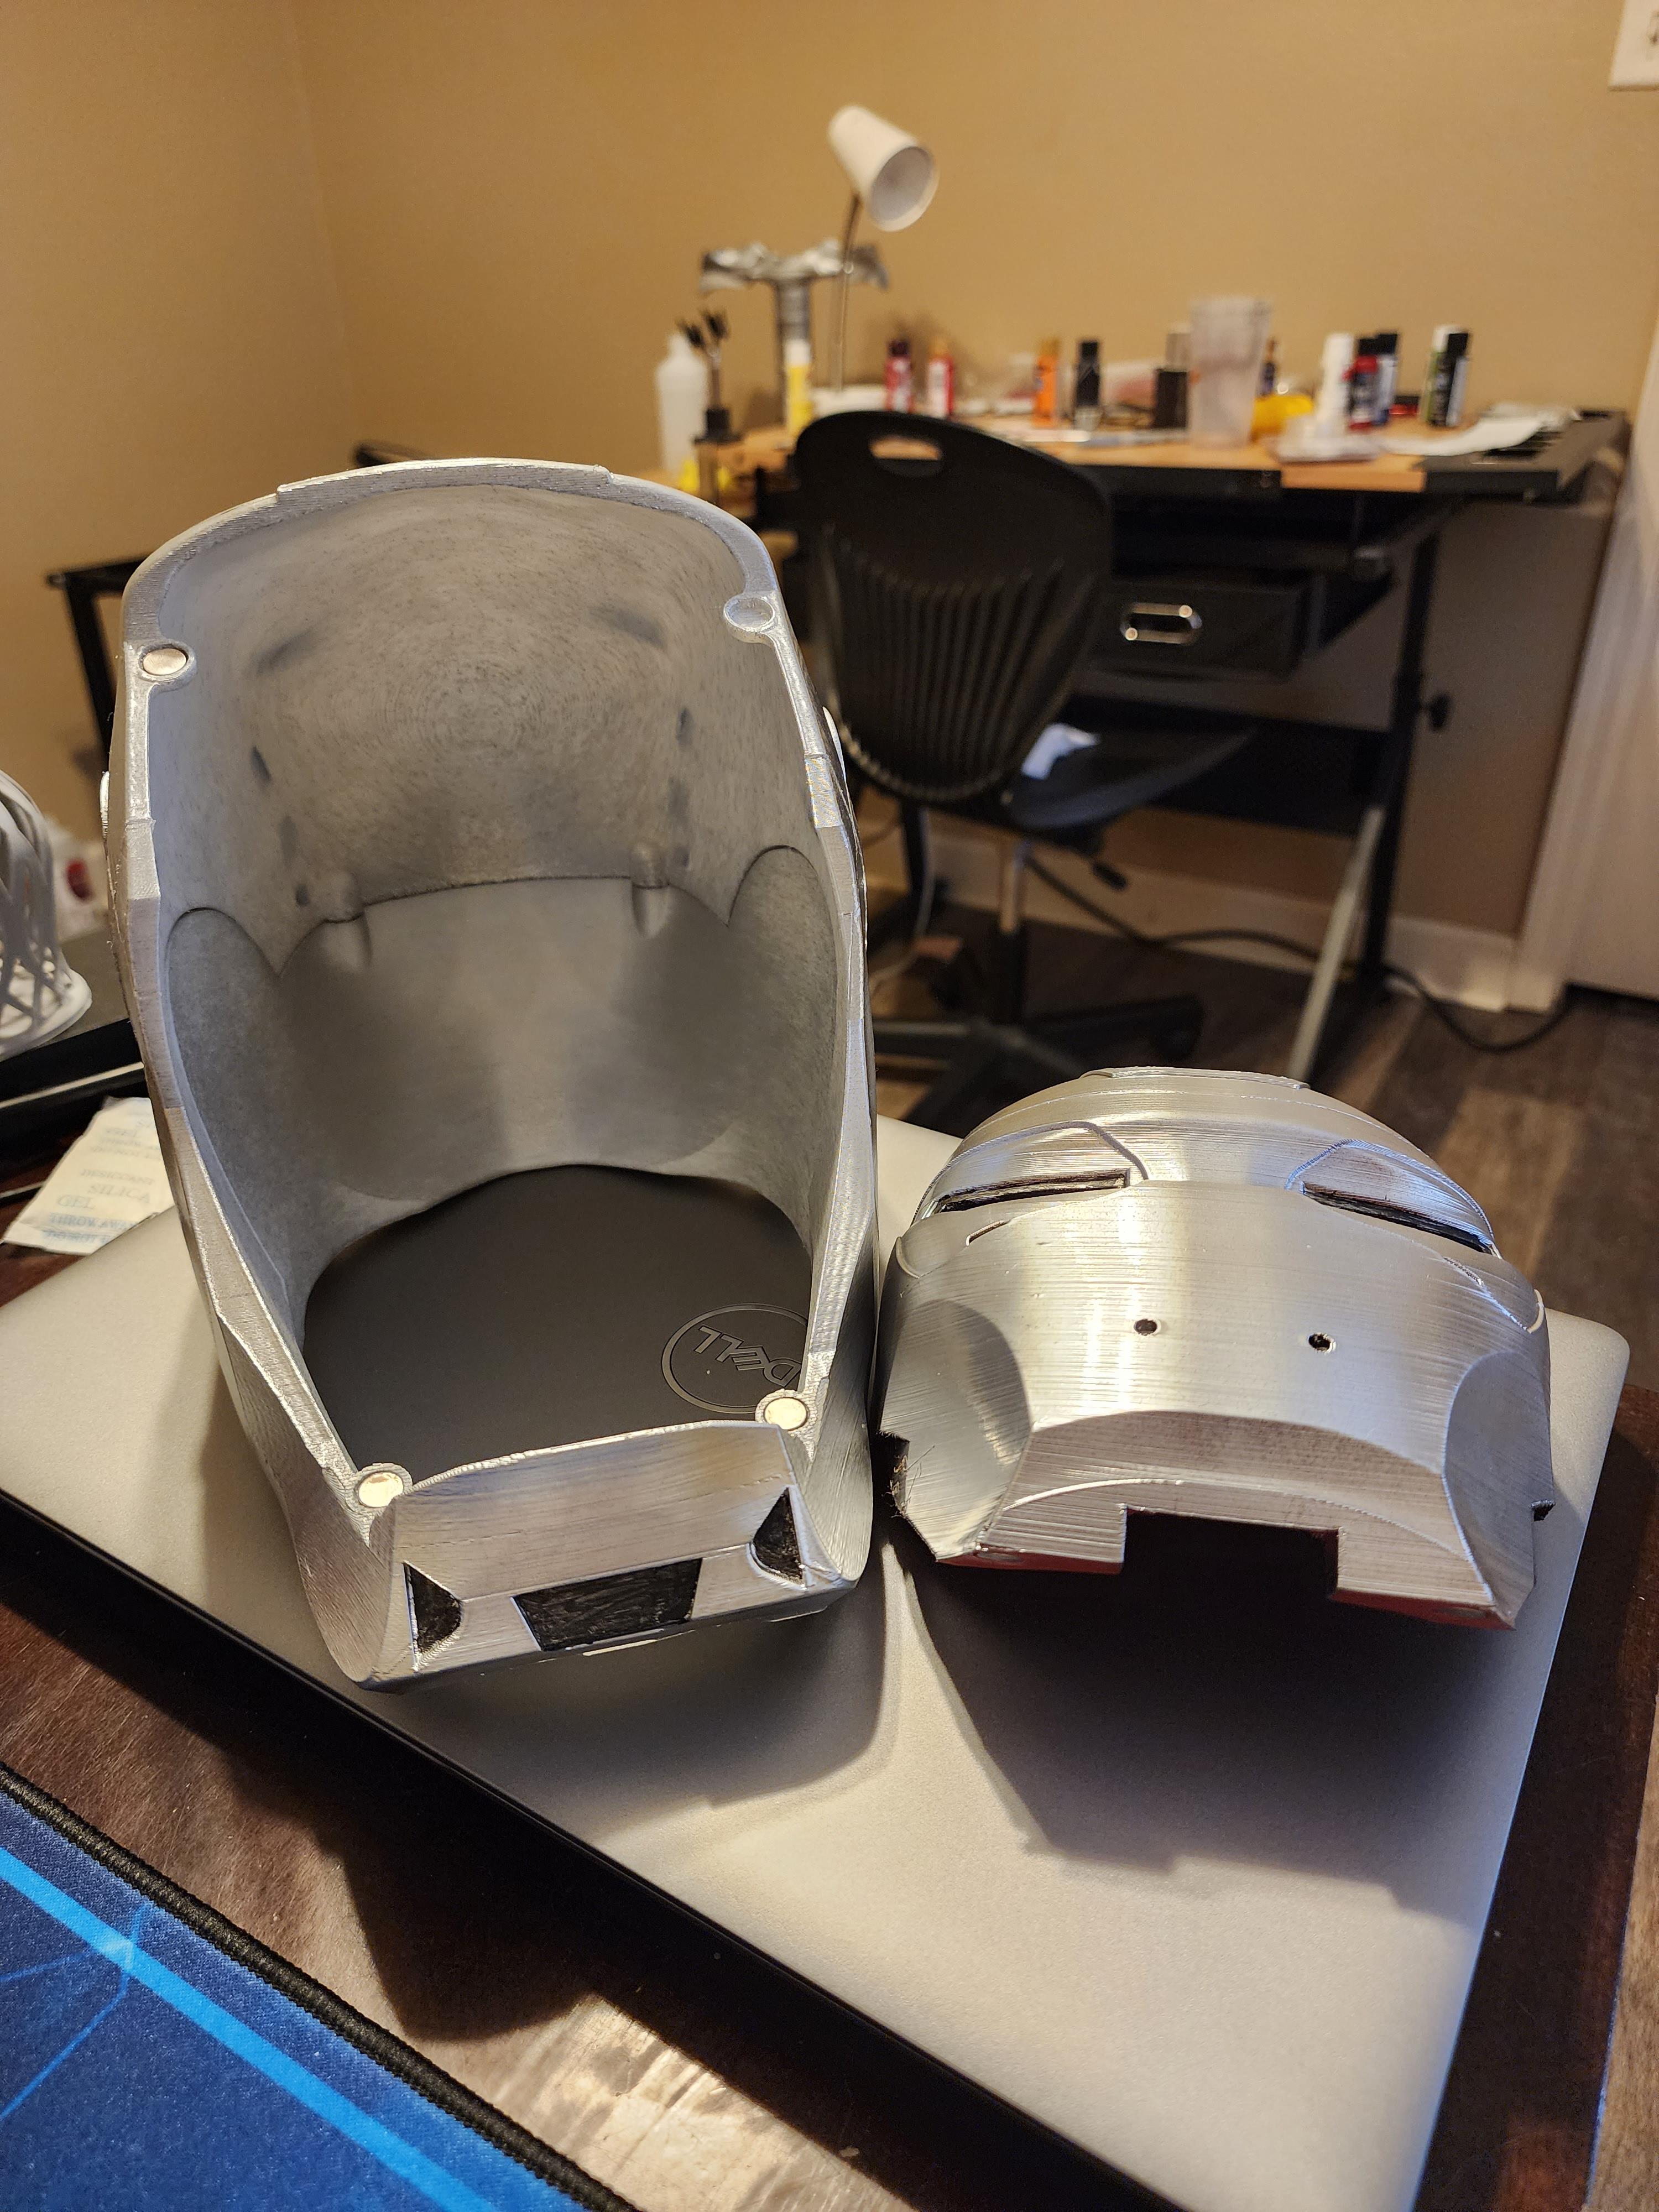 Iron Terminator Fan Art Helmet 3d model